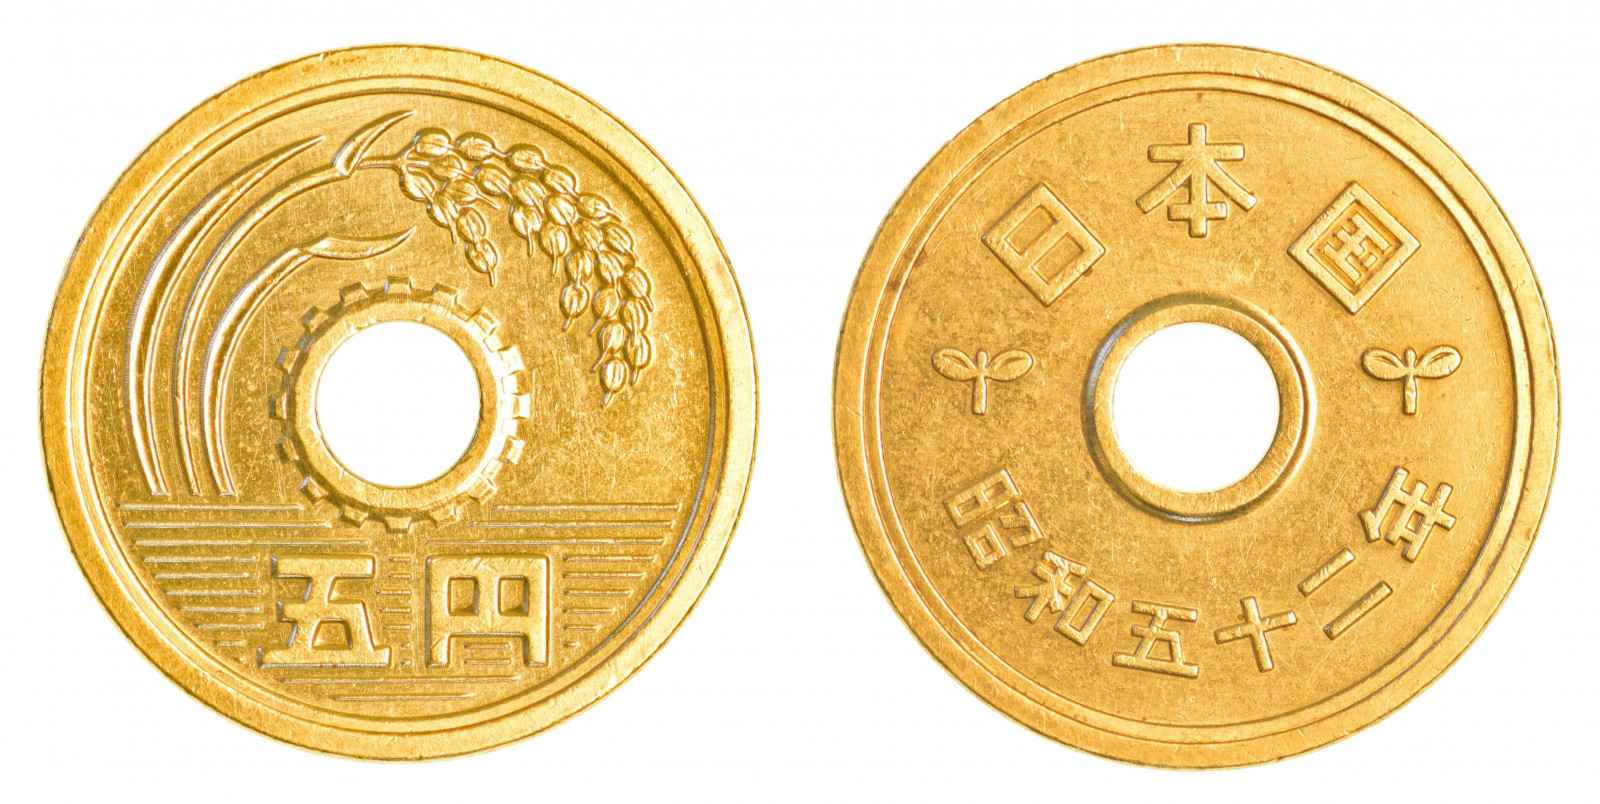 5 Йен монета с дыркой